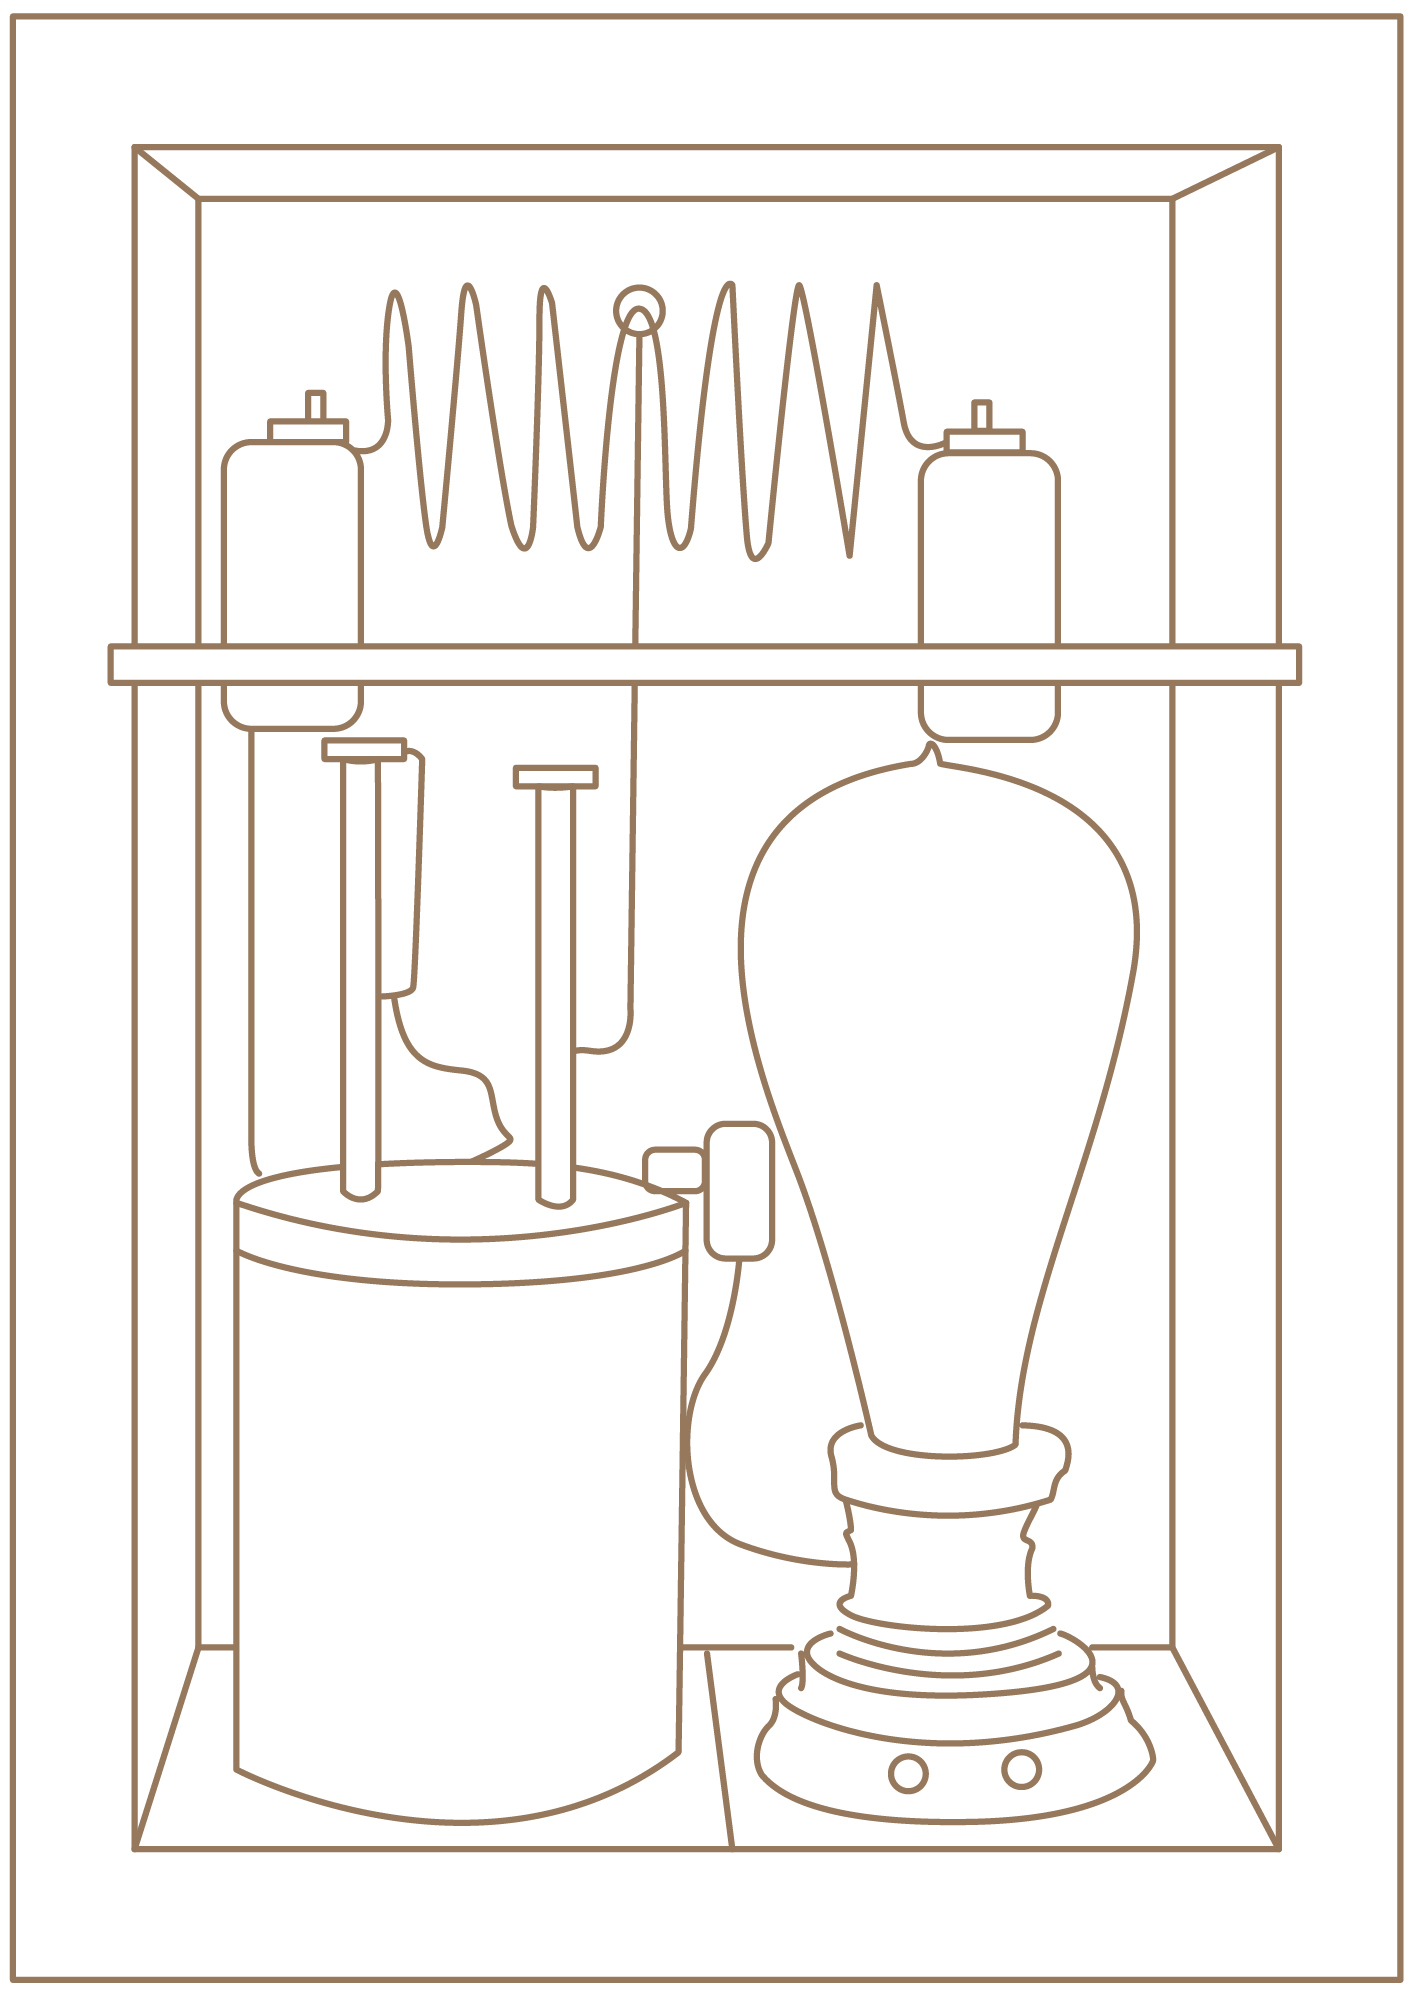 Edison Chemical Meter Replica, 1882